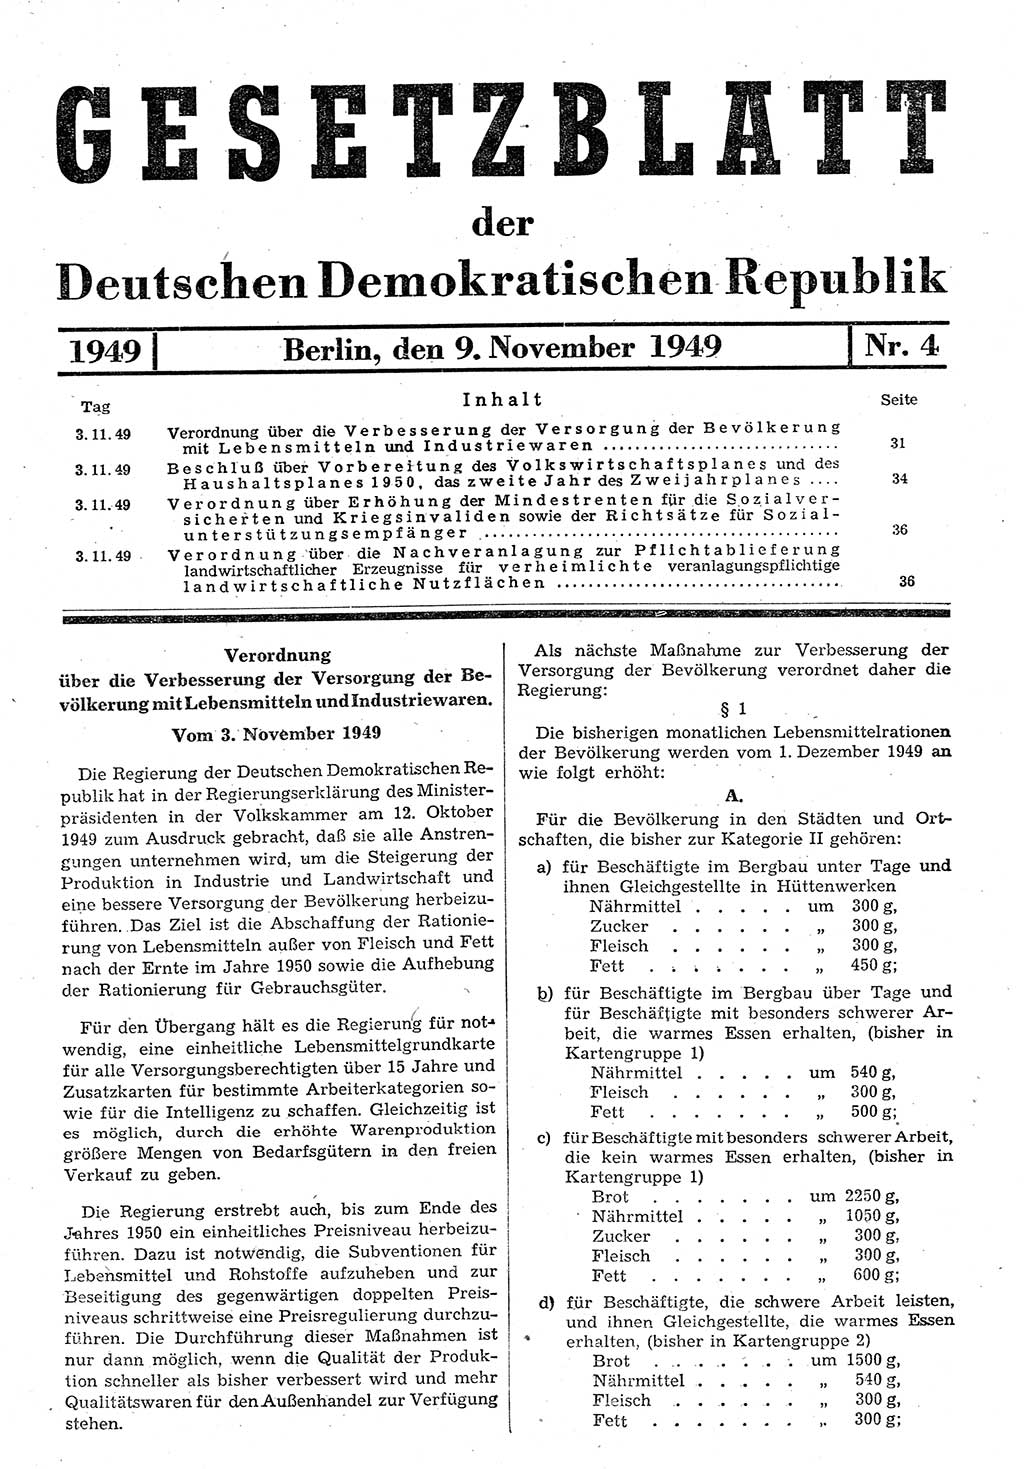 Gesetzblatt (GBl.) der Deutschen Demokratischen Republik (DDR) 1949, Seite 31 (GBl. DDR 1949, S. 31)